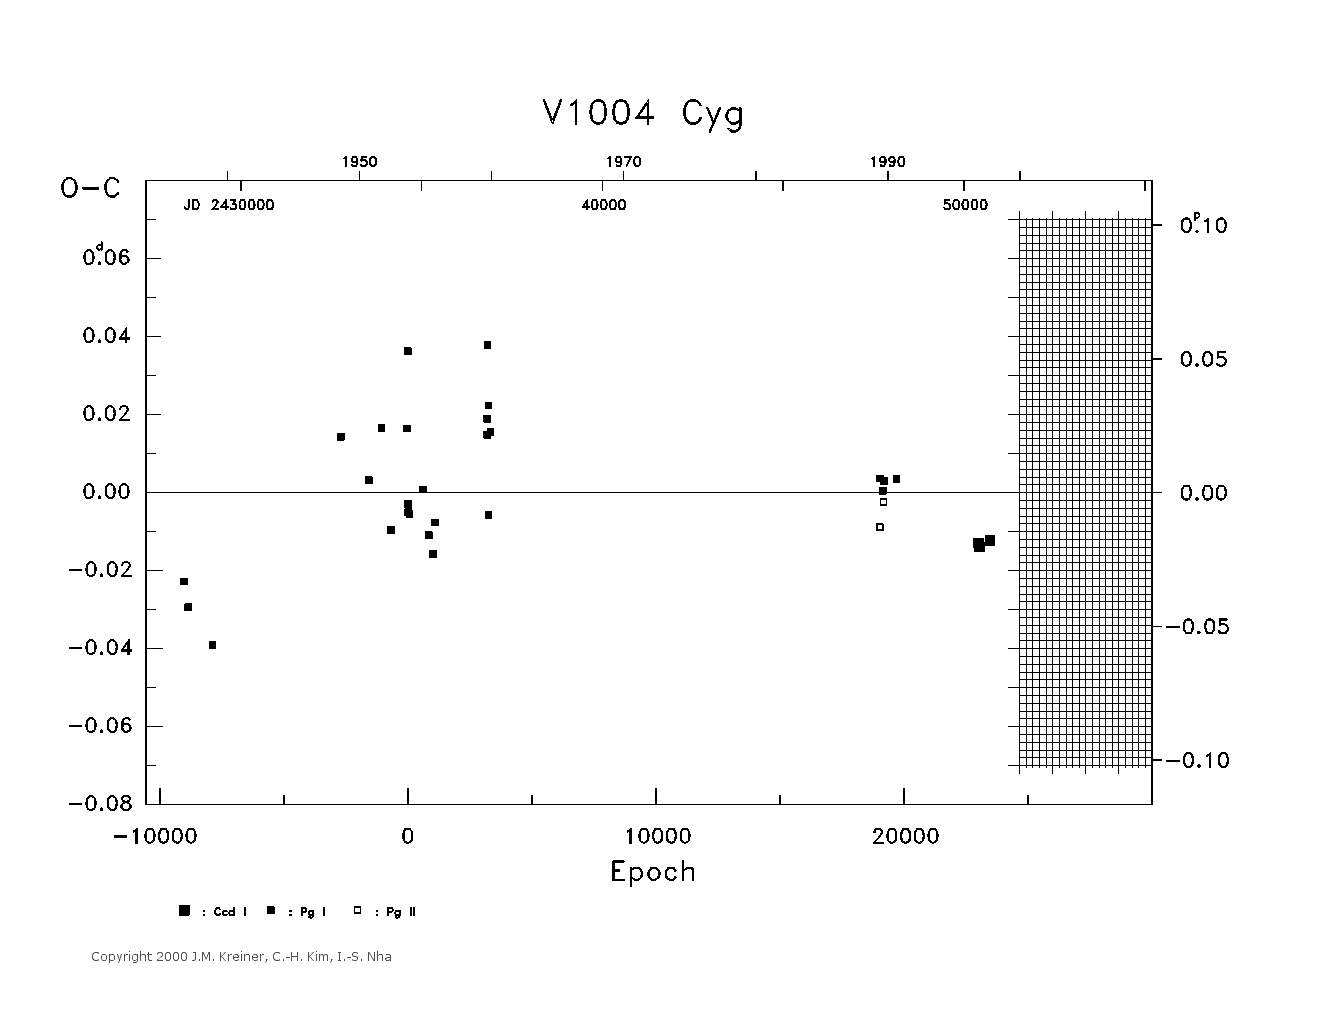 [IMAGE: large V1004 CYG O-C diagram]